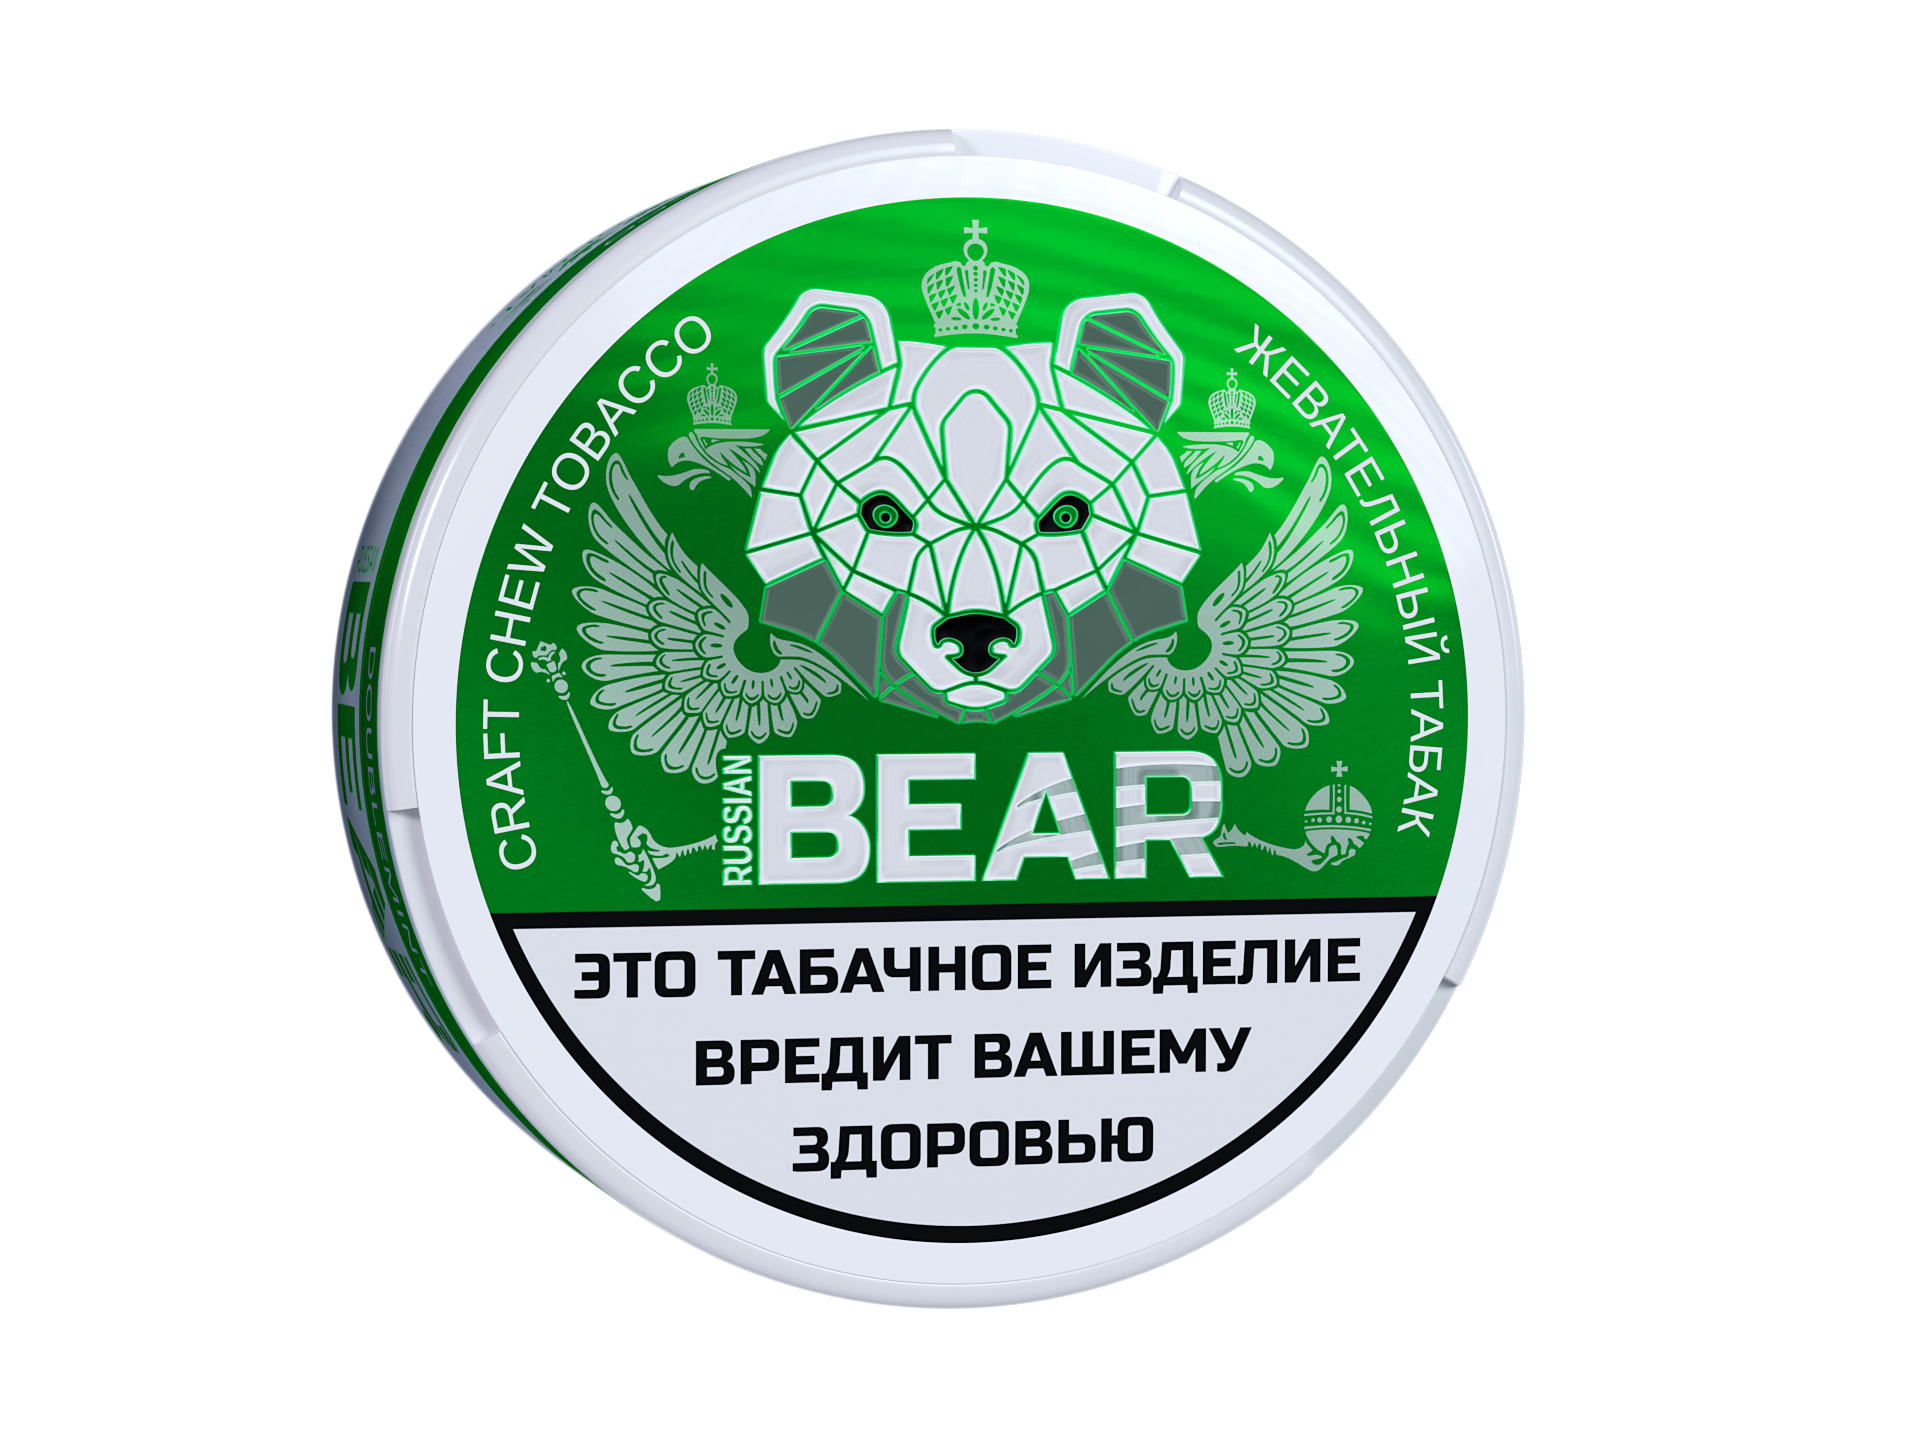 Жевательный табак Russian Bear со вкусом Doublemint